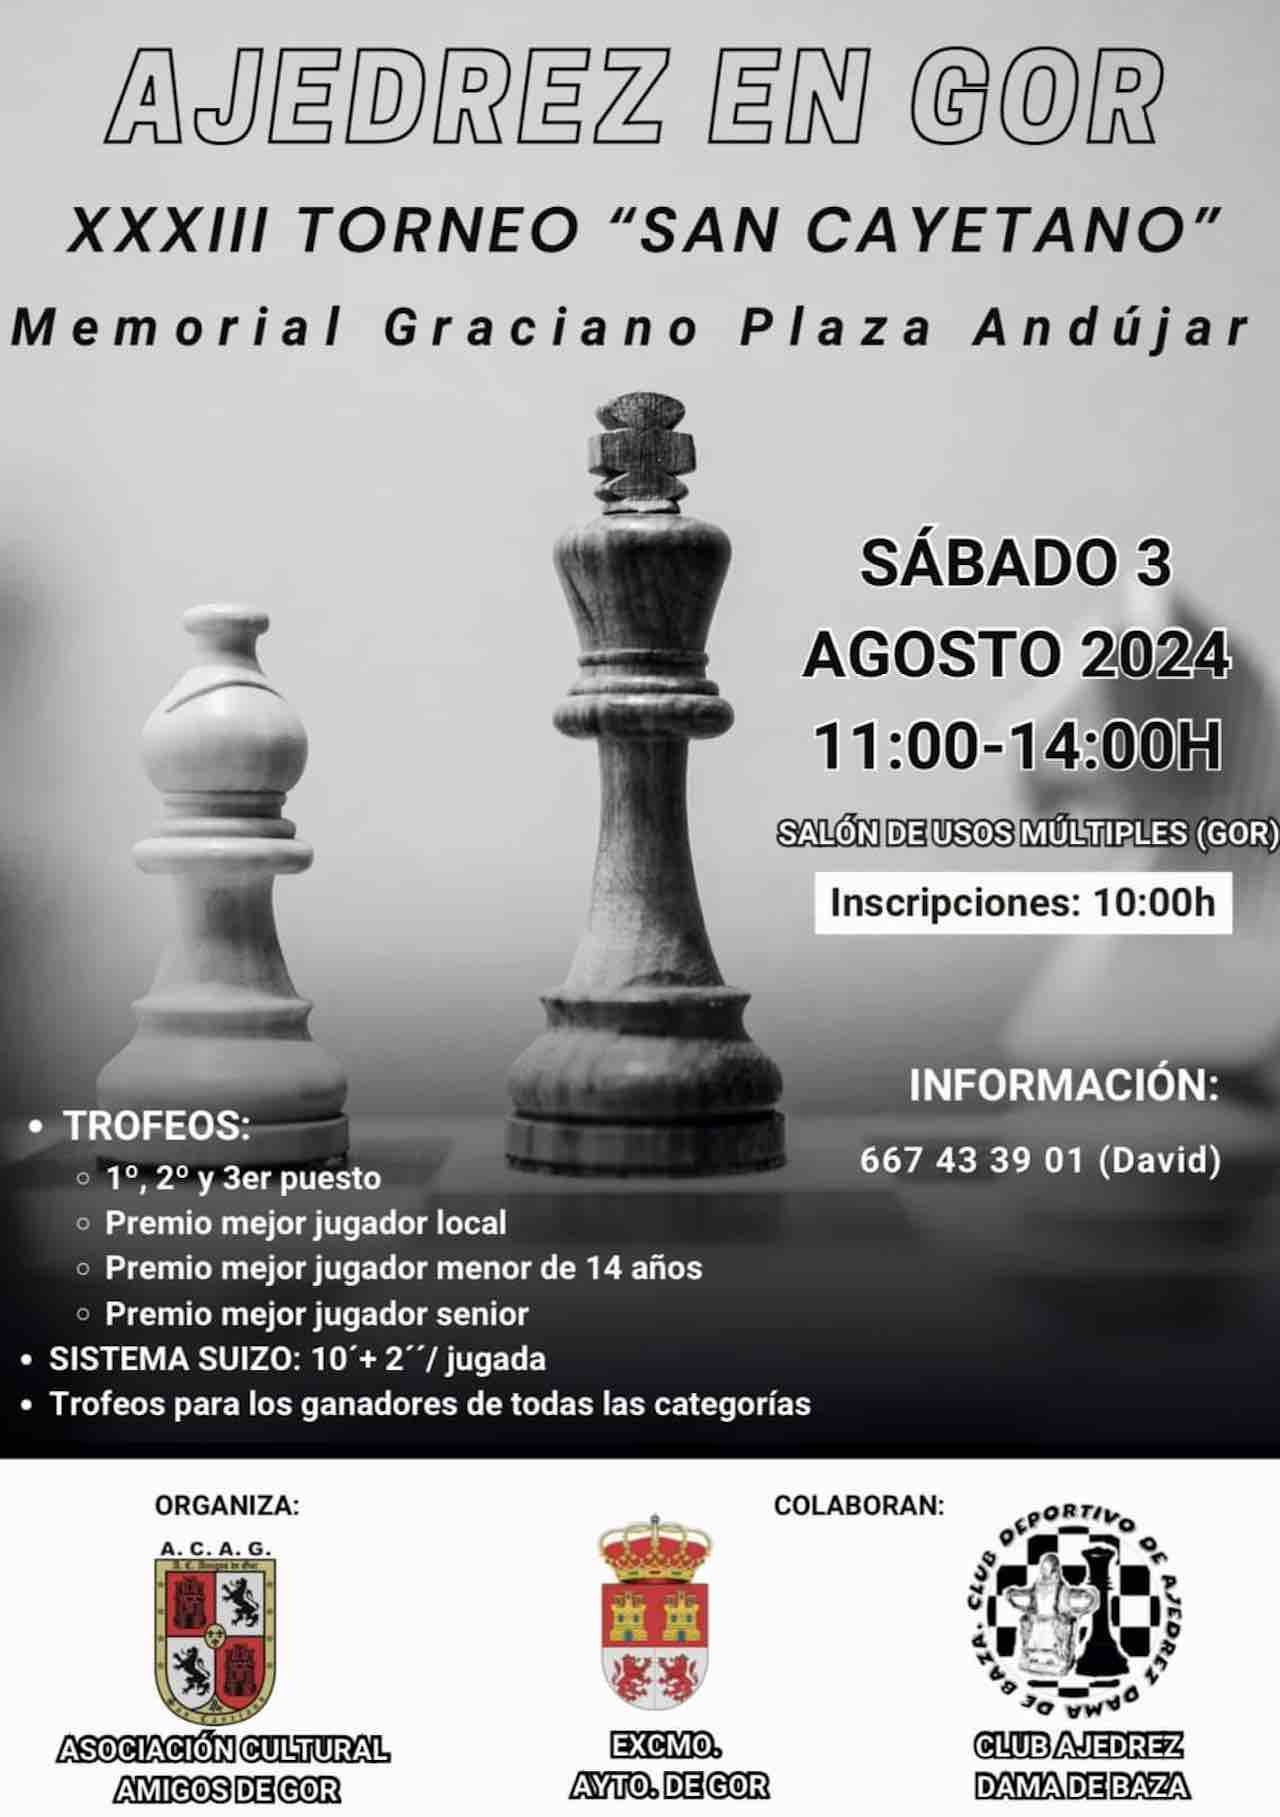 Torneo de ajedrez San Cayetano Memorial Graciano Plaza Andújar en Gor